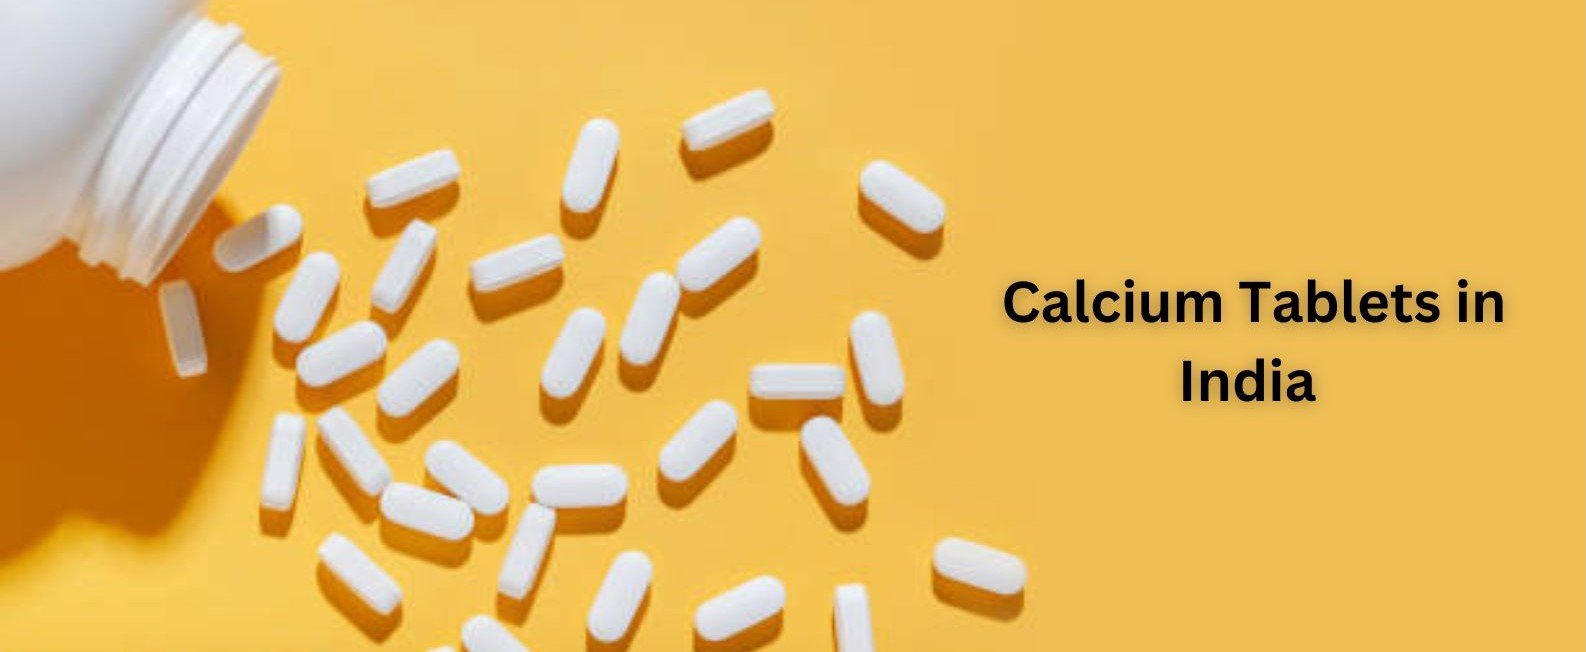 Calcium Tablets in India